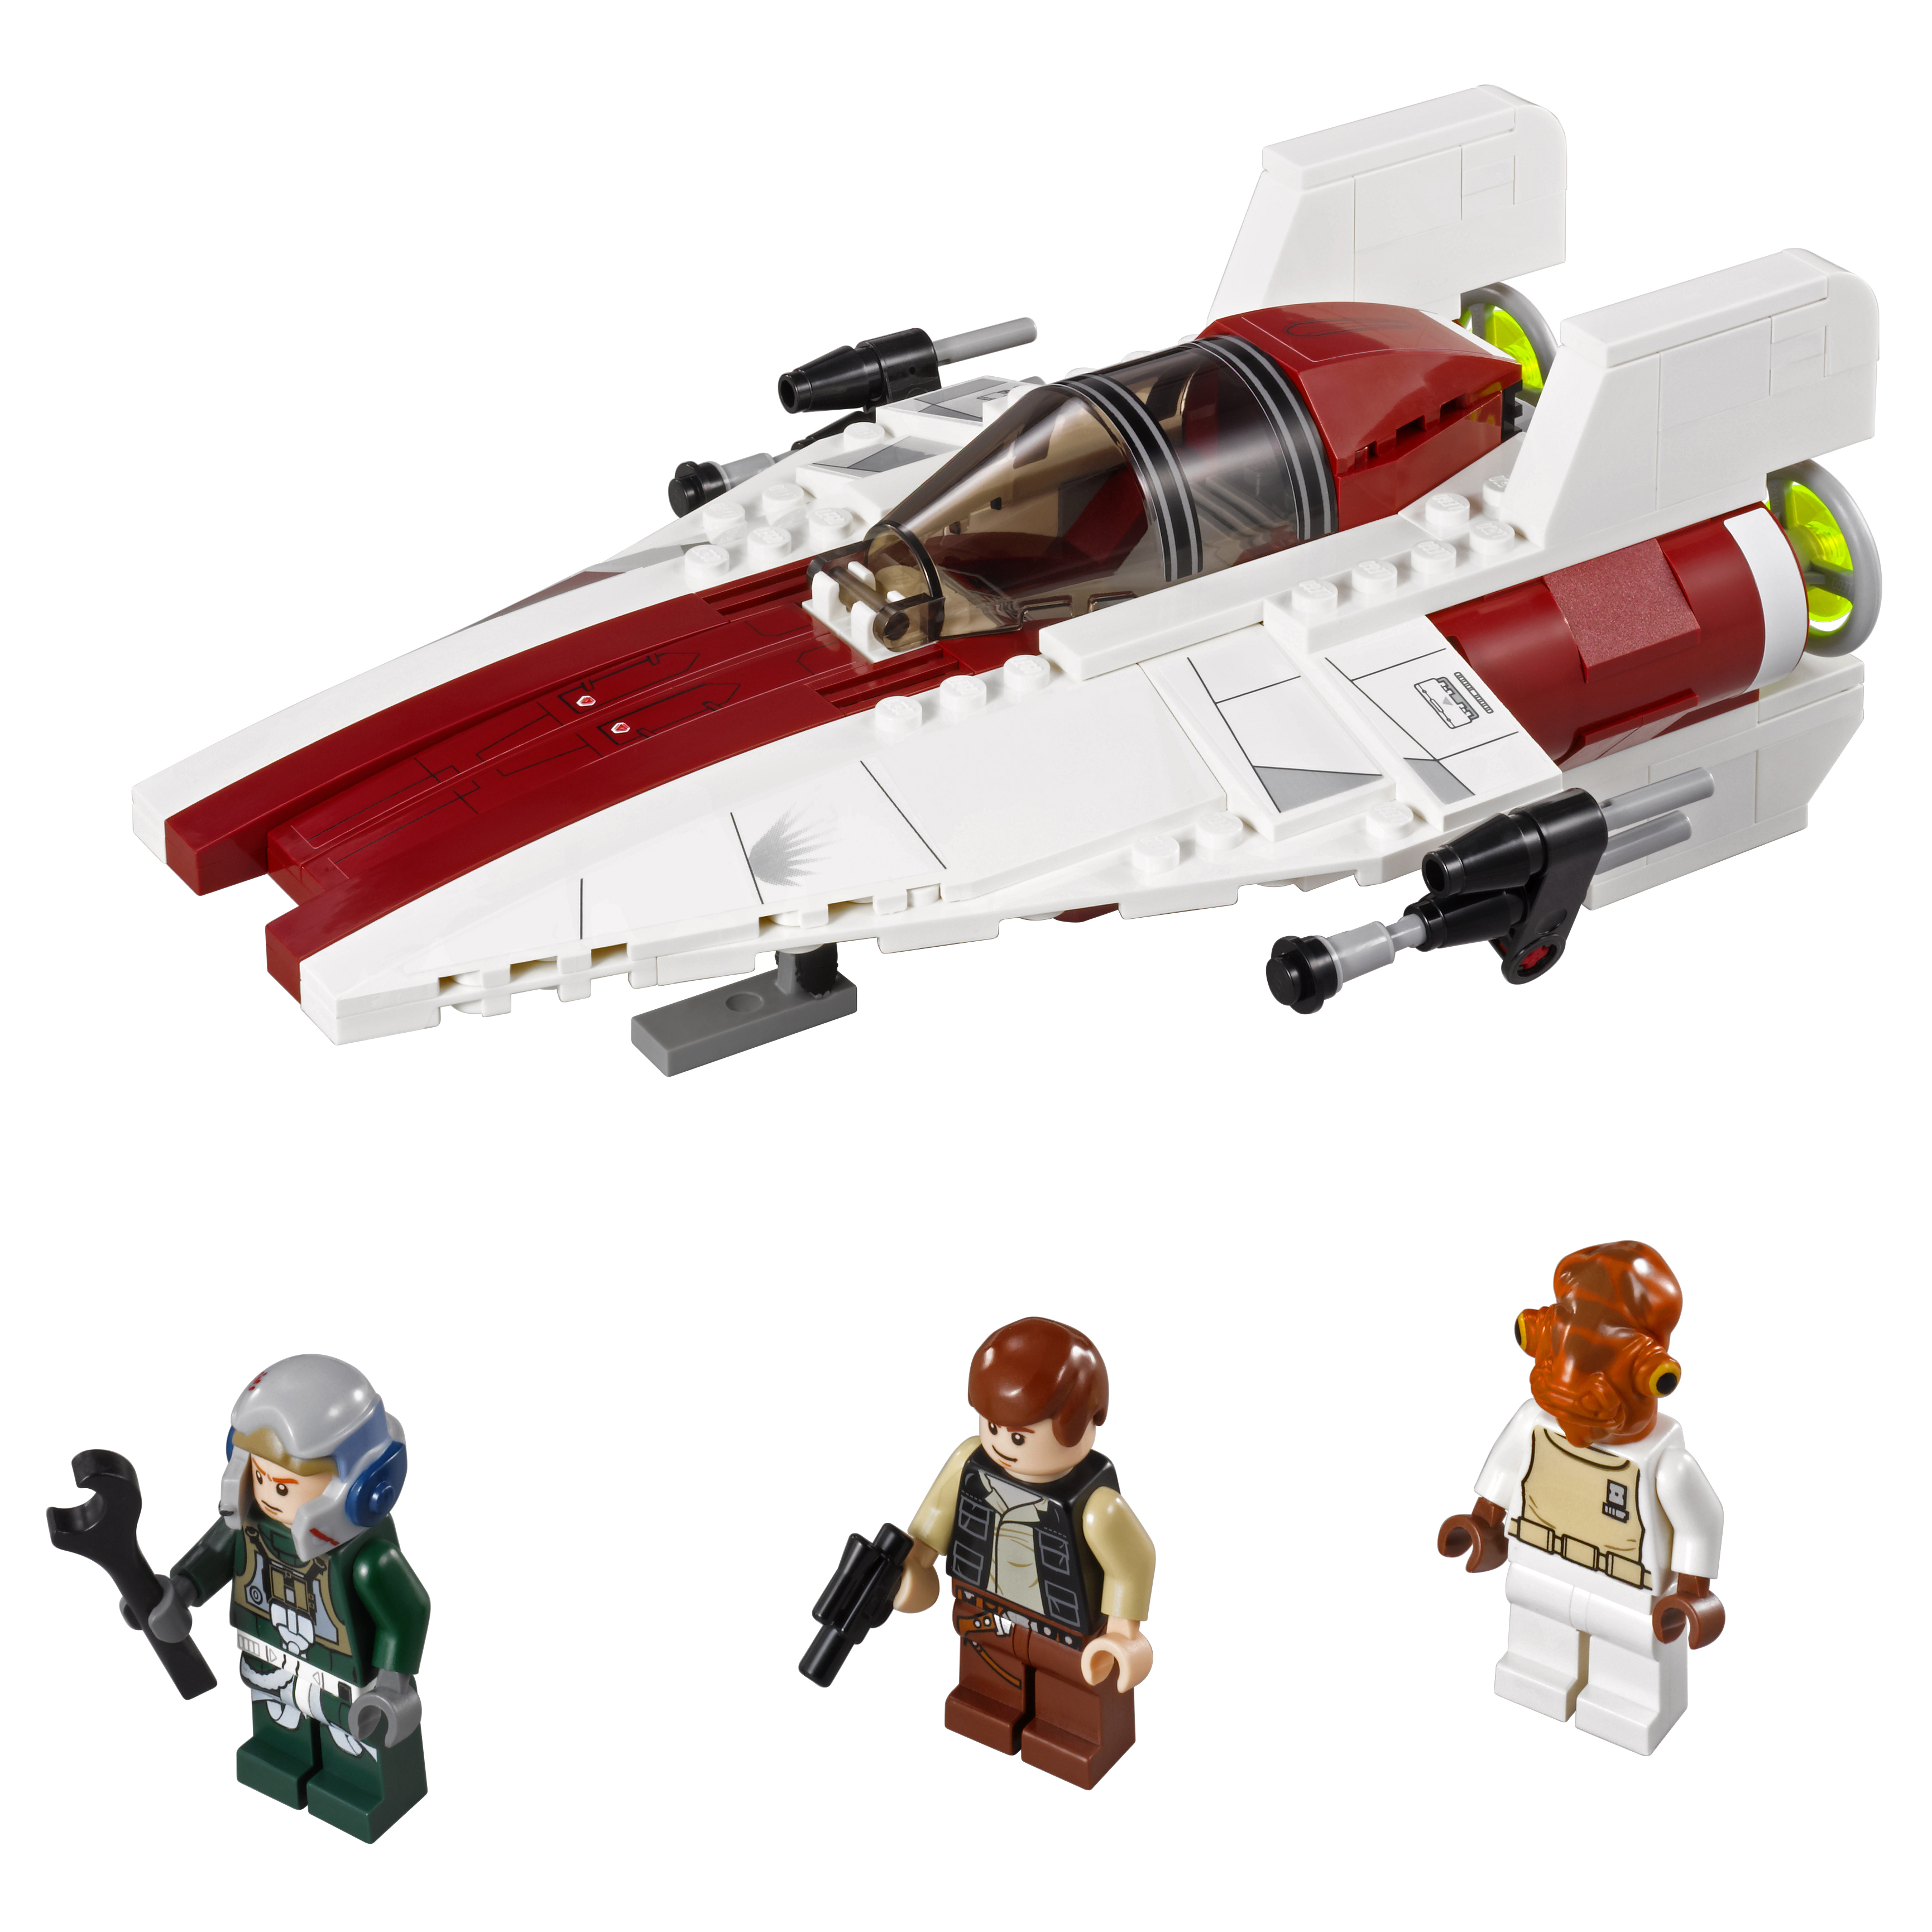 Конструктор LEGO Star Wars A-wing Starfighter (Истребитель A-wing) (75003) конструктор lego star wars 30654 x wing starfighter 87 дет